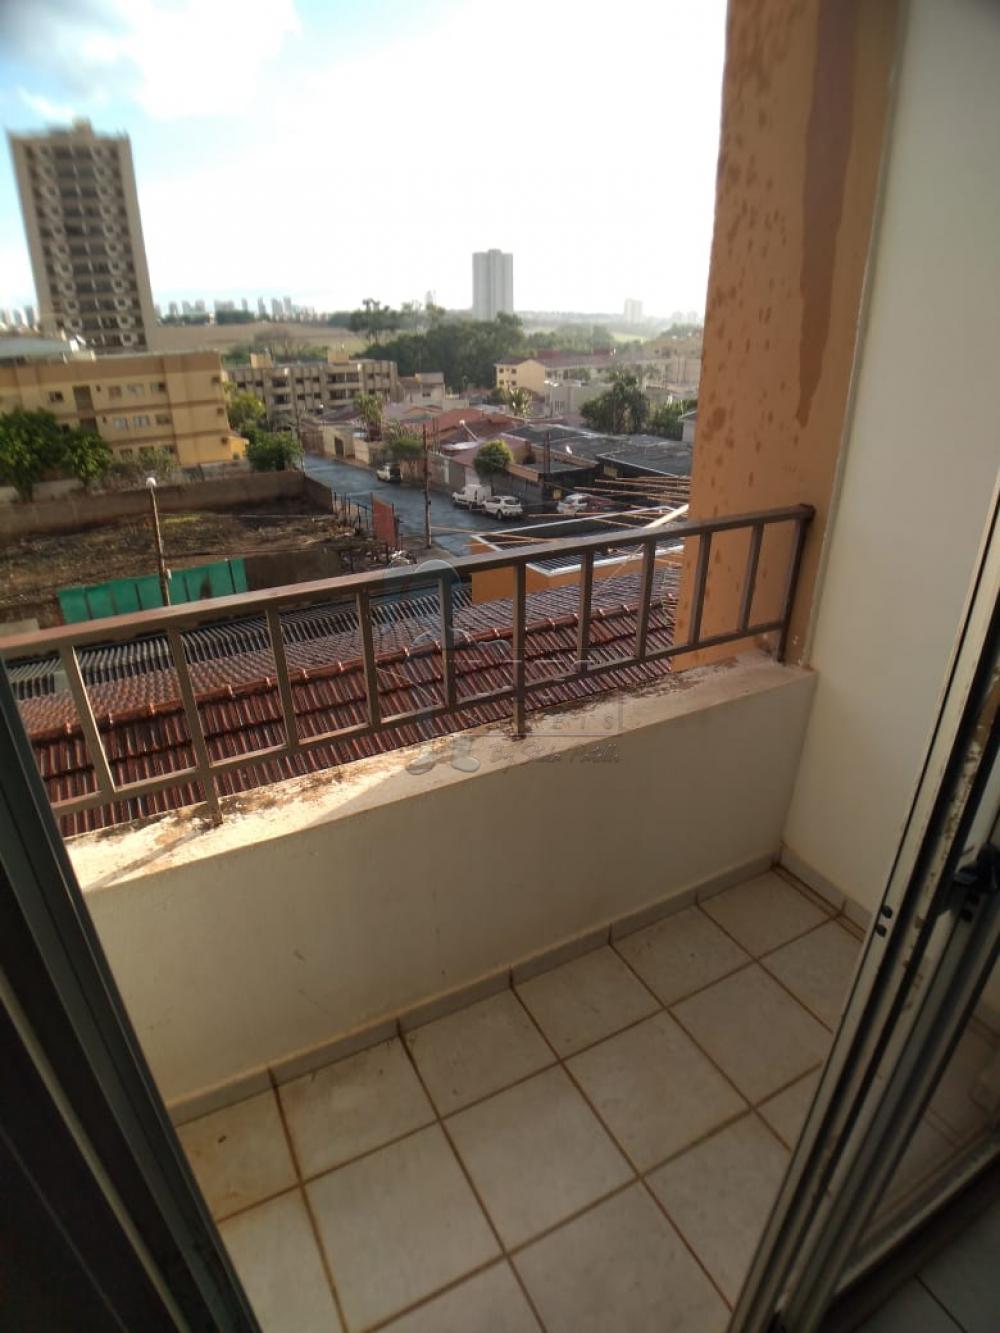 Alugar Apartamentos / Padrão em Ribeirão Preto R$ 630,00 - Foto 3